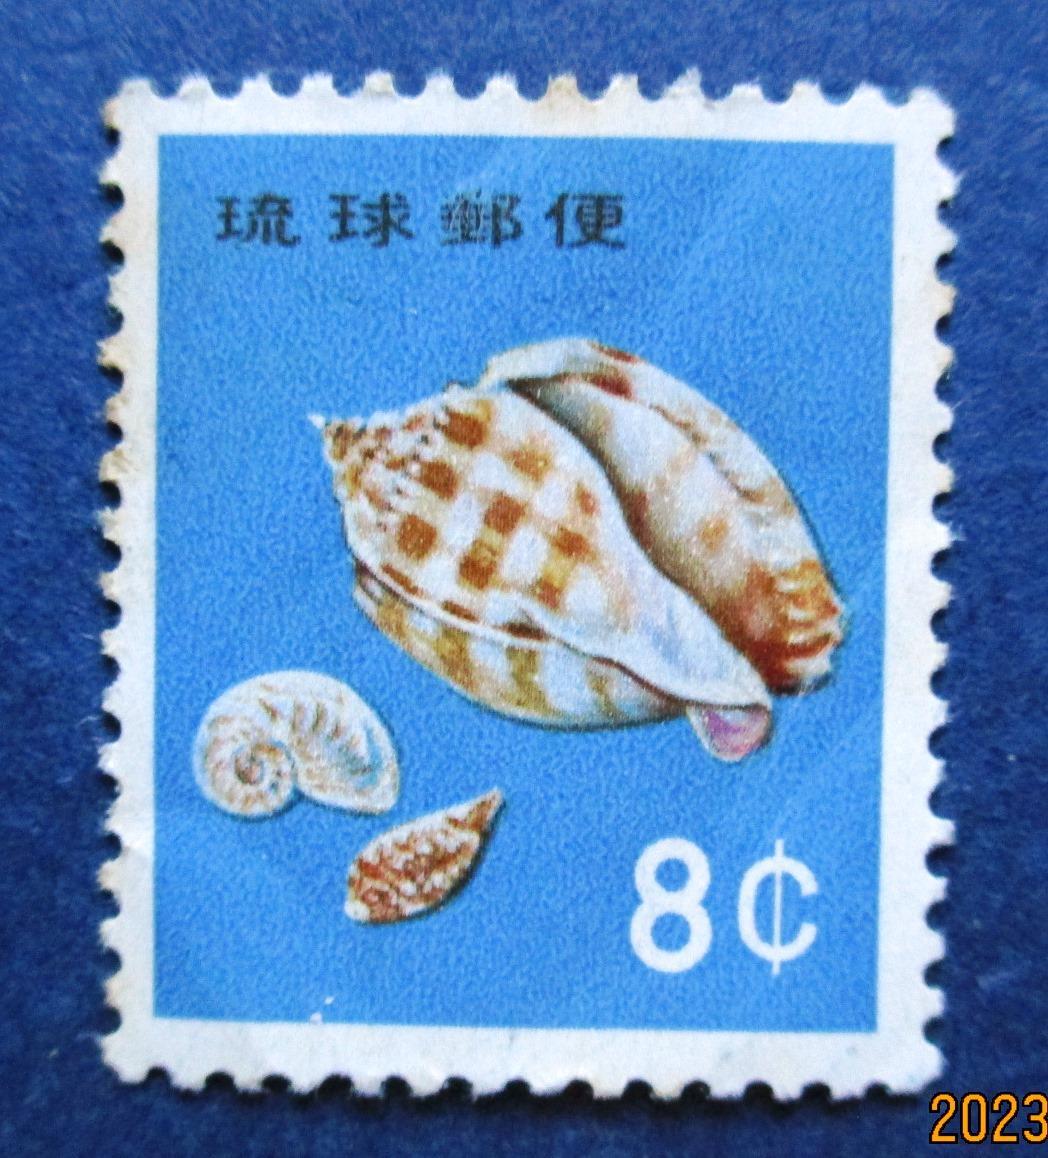 沖縄切手・琉球切手 第2次動植物シリーズ 8￠切手 AA188 裏にスジがあります。画像参照してください。の画像1